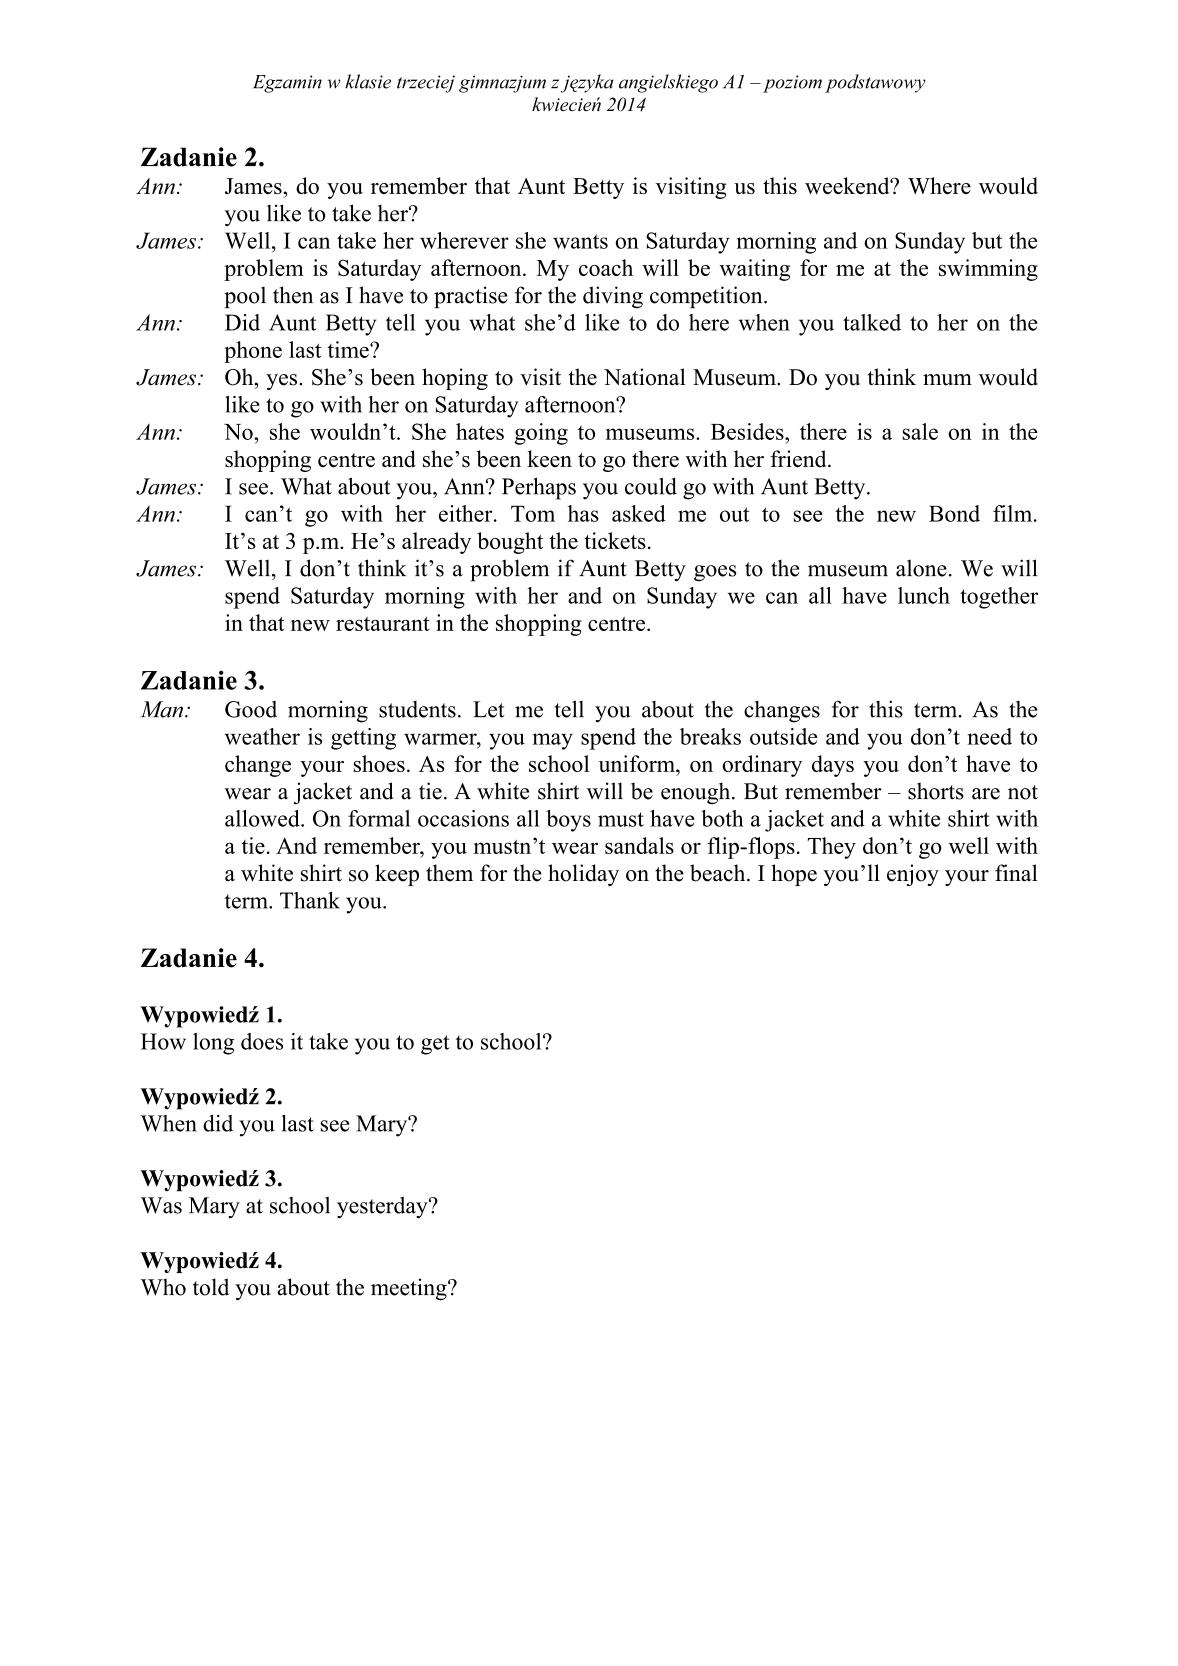 transkrypcja-angielski-poziom-podstawowy-egzamin-gimnazjalny-25.04.2014-2